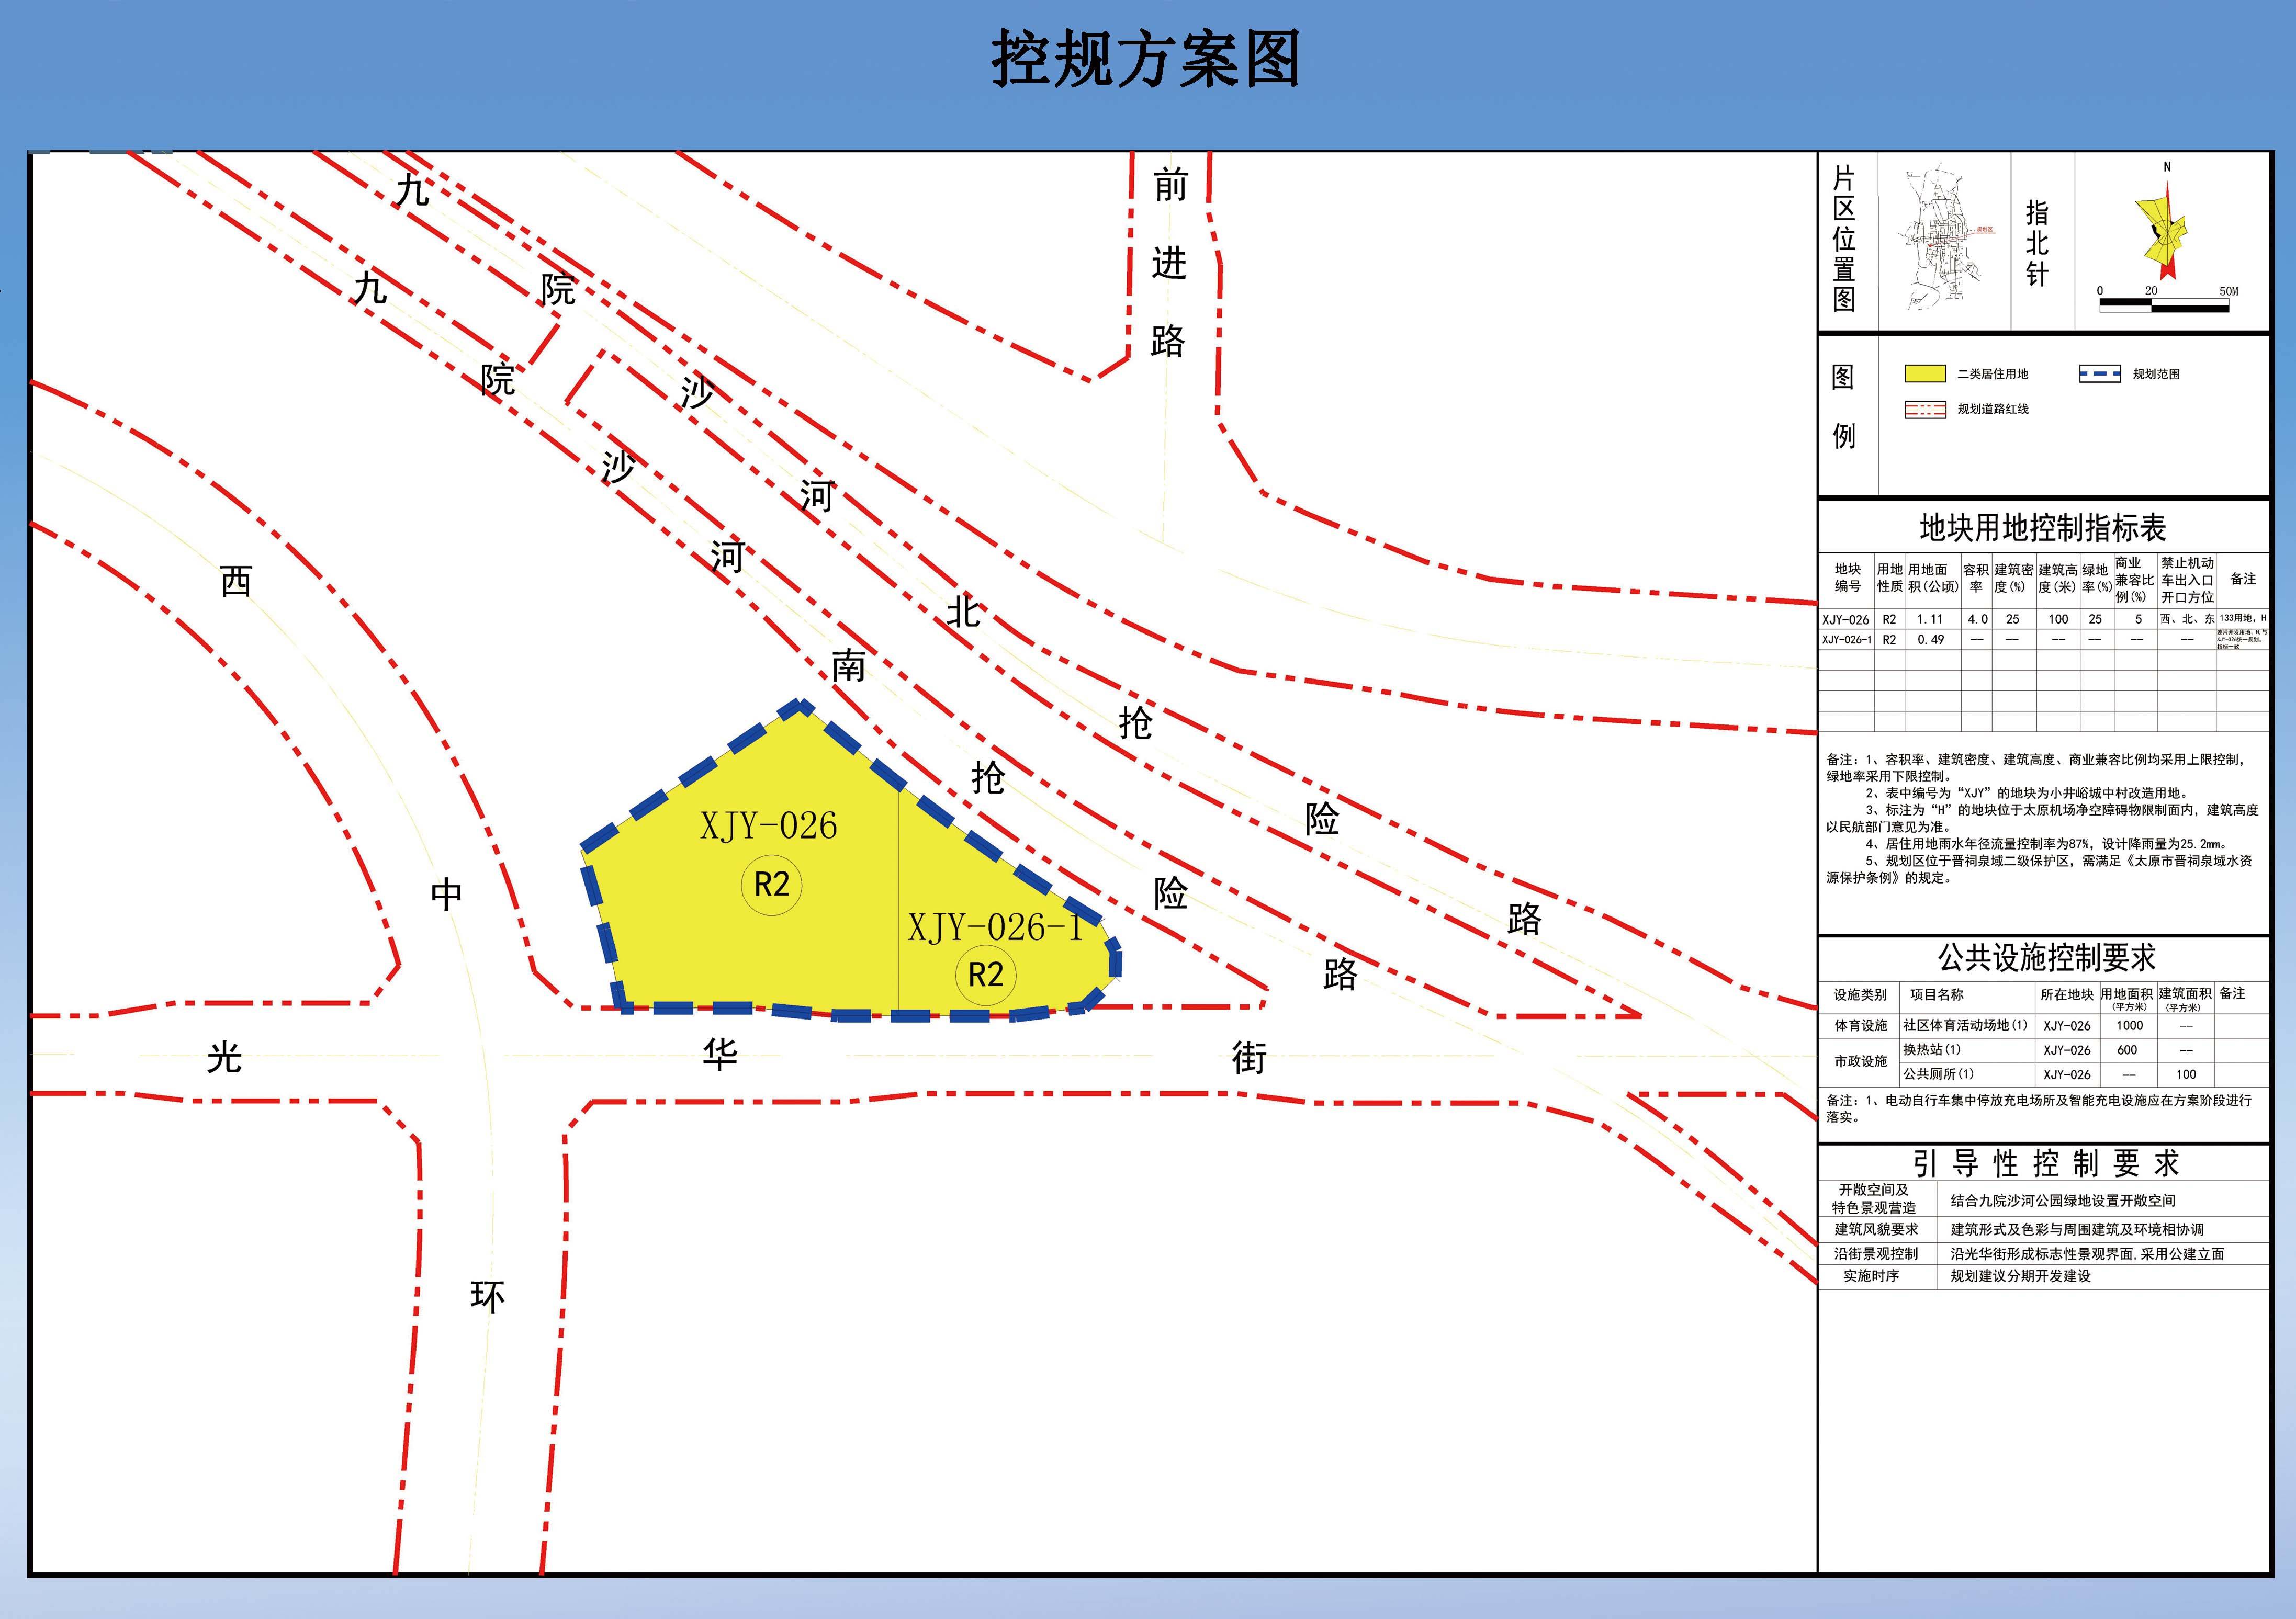 小井峪村城中村改造用地局部(xjy-026,026-1地块)控制性详细规划方案